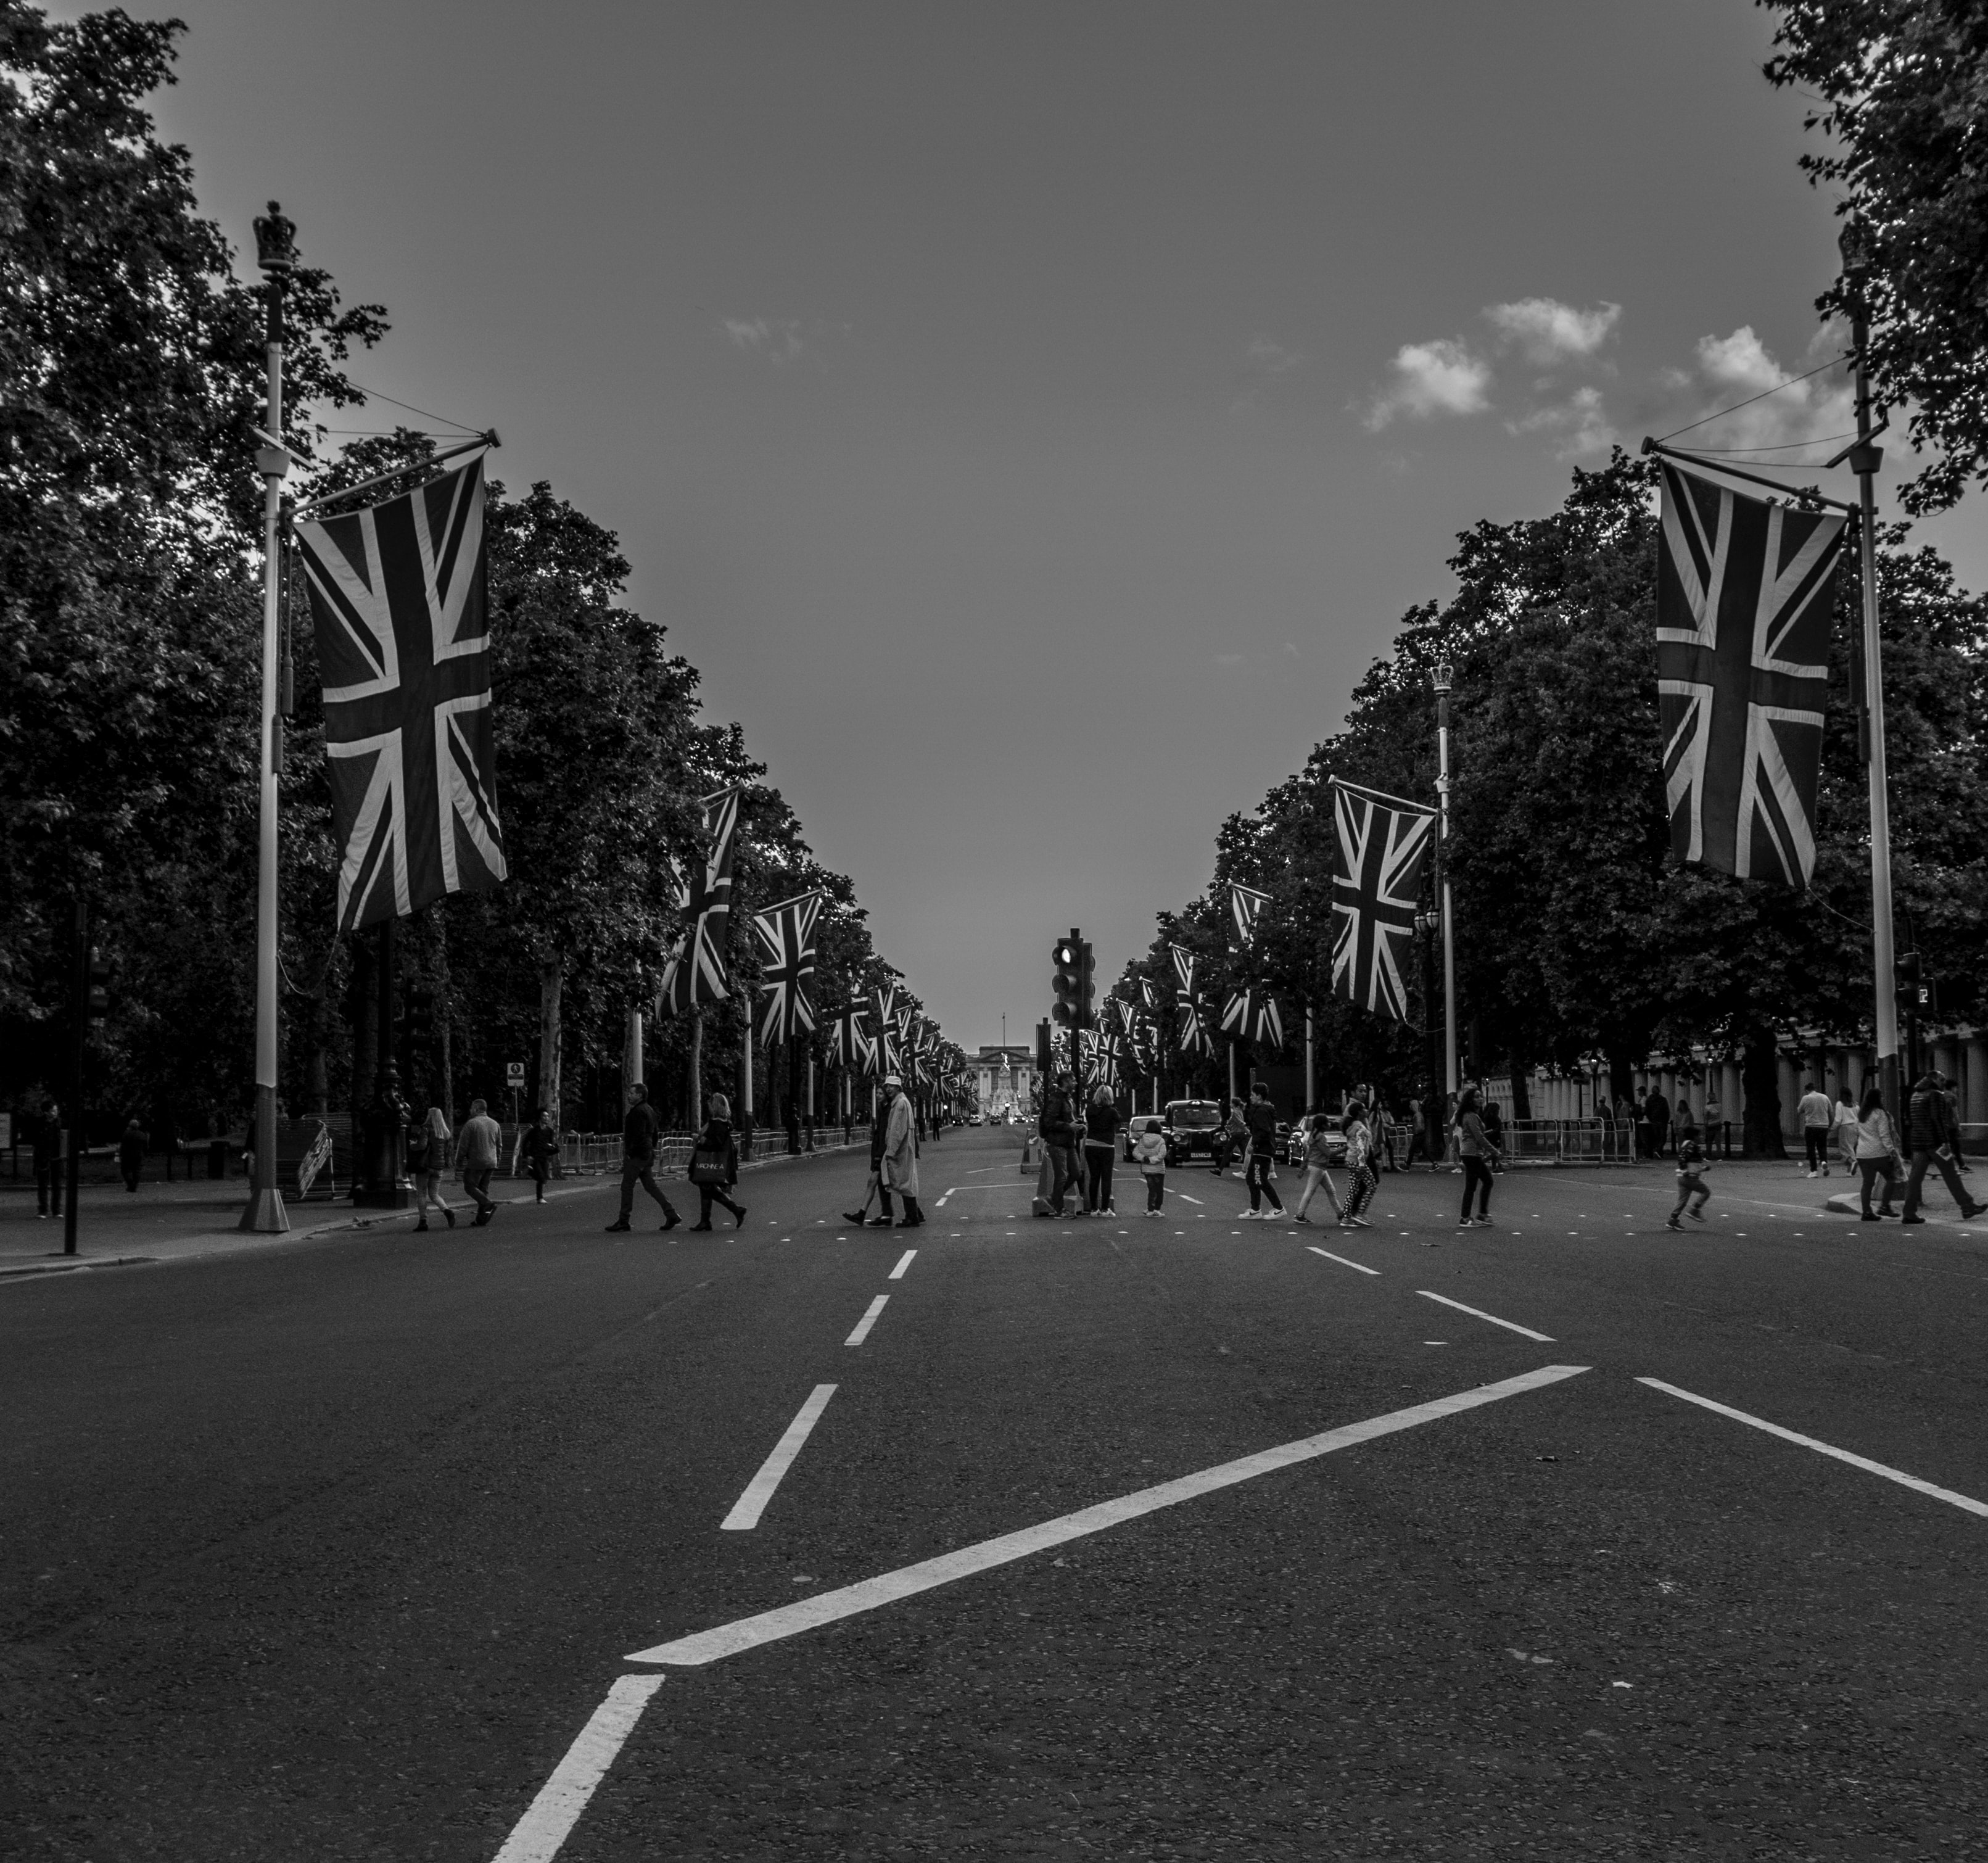 people-walking-down-road-union-jack-flags.jpg